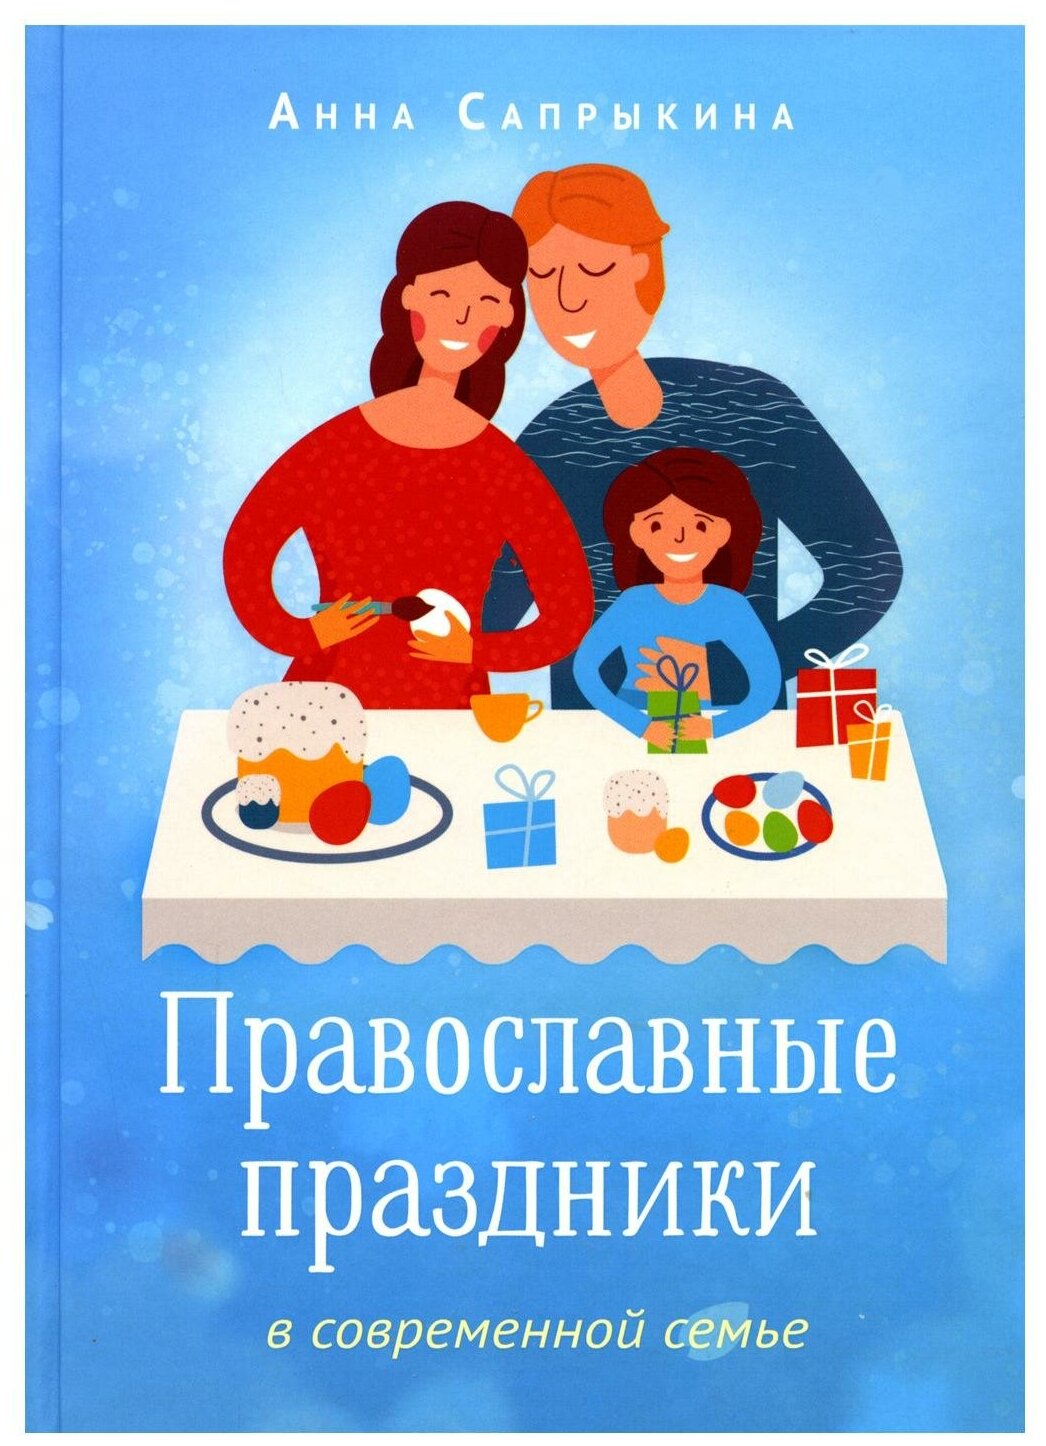 Православные праздники в современной семье - фото №1